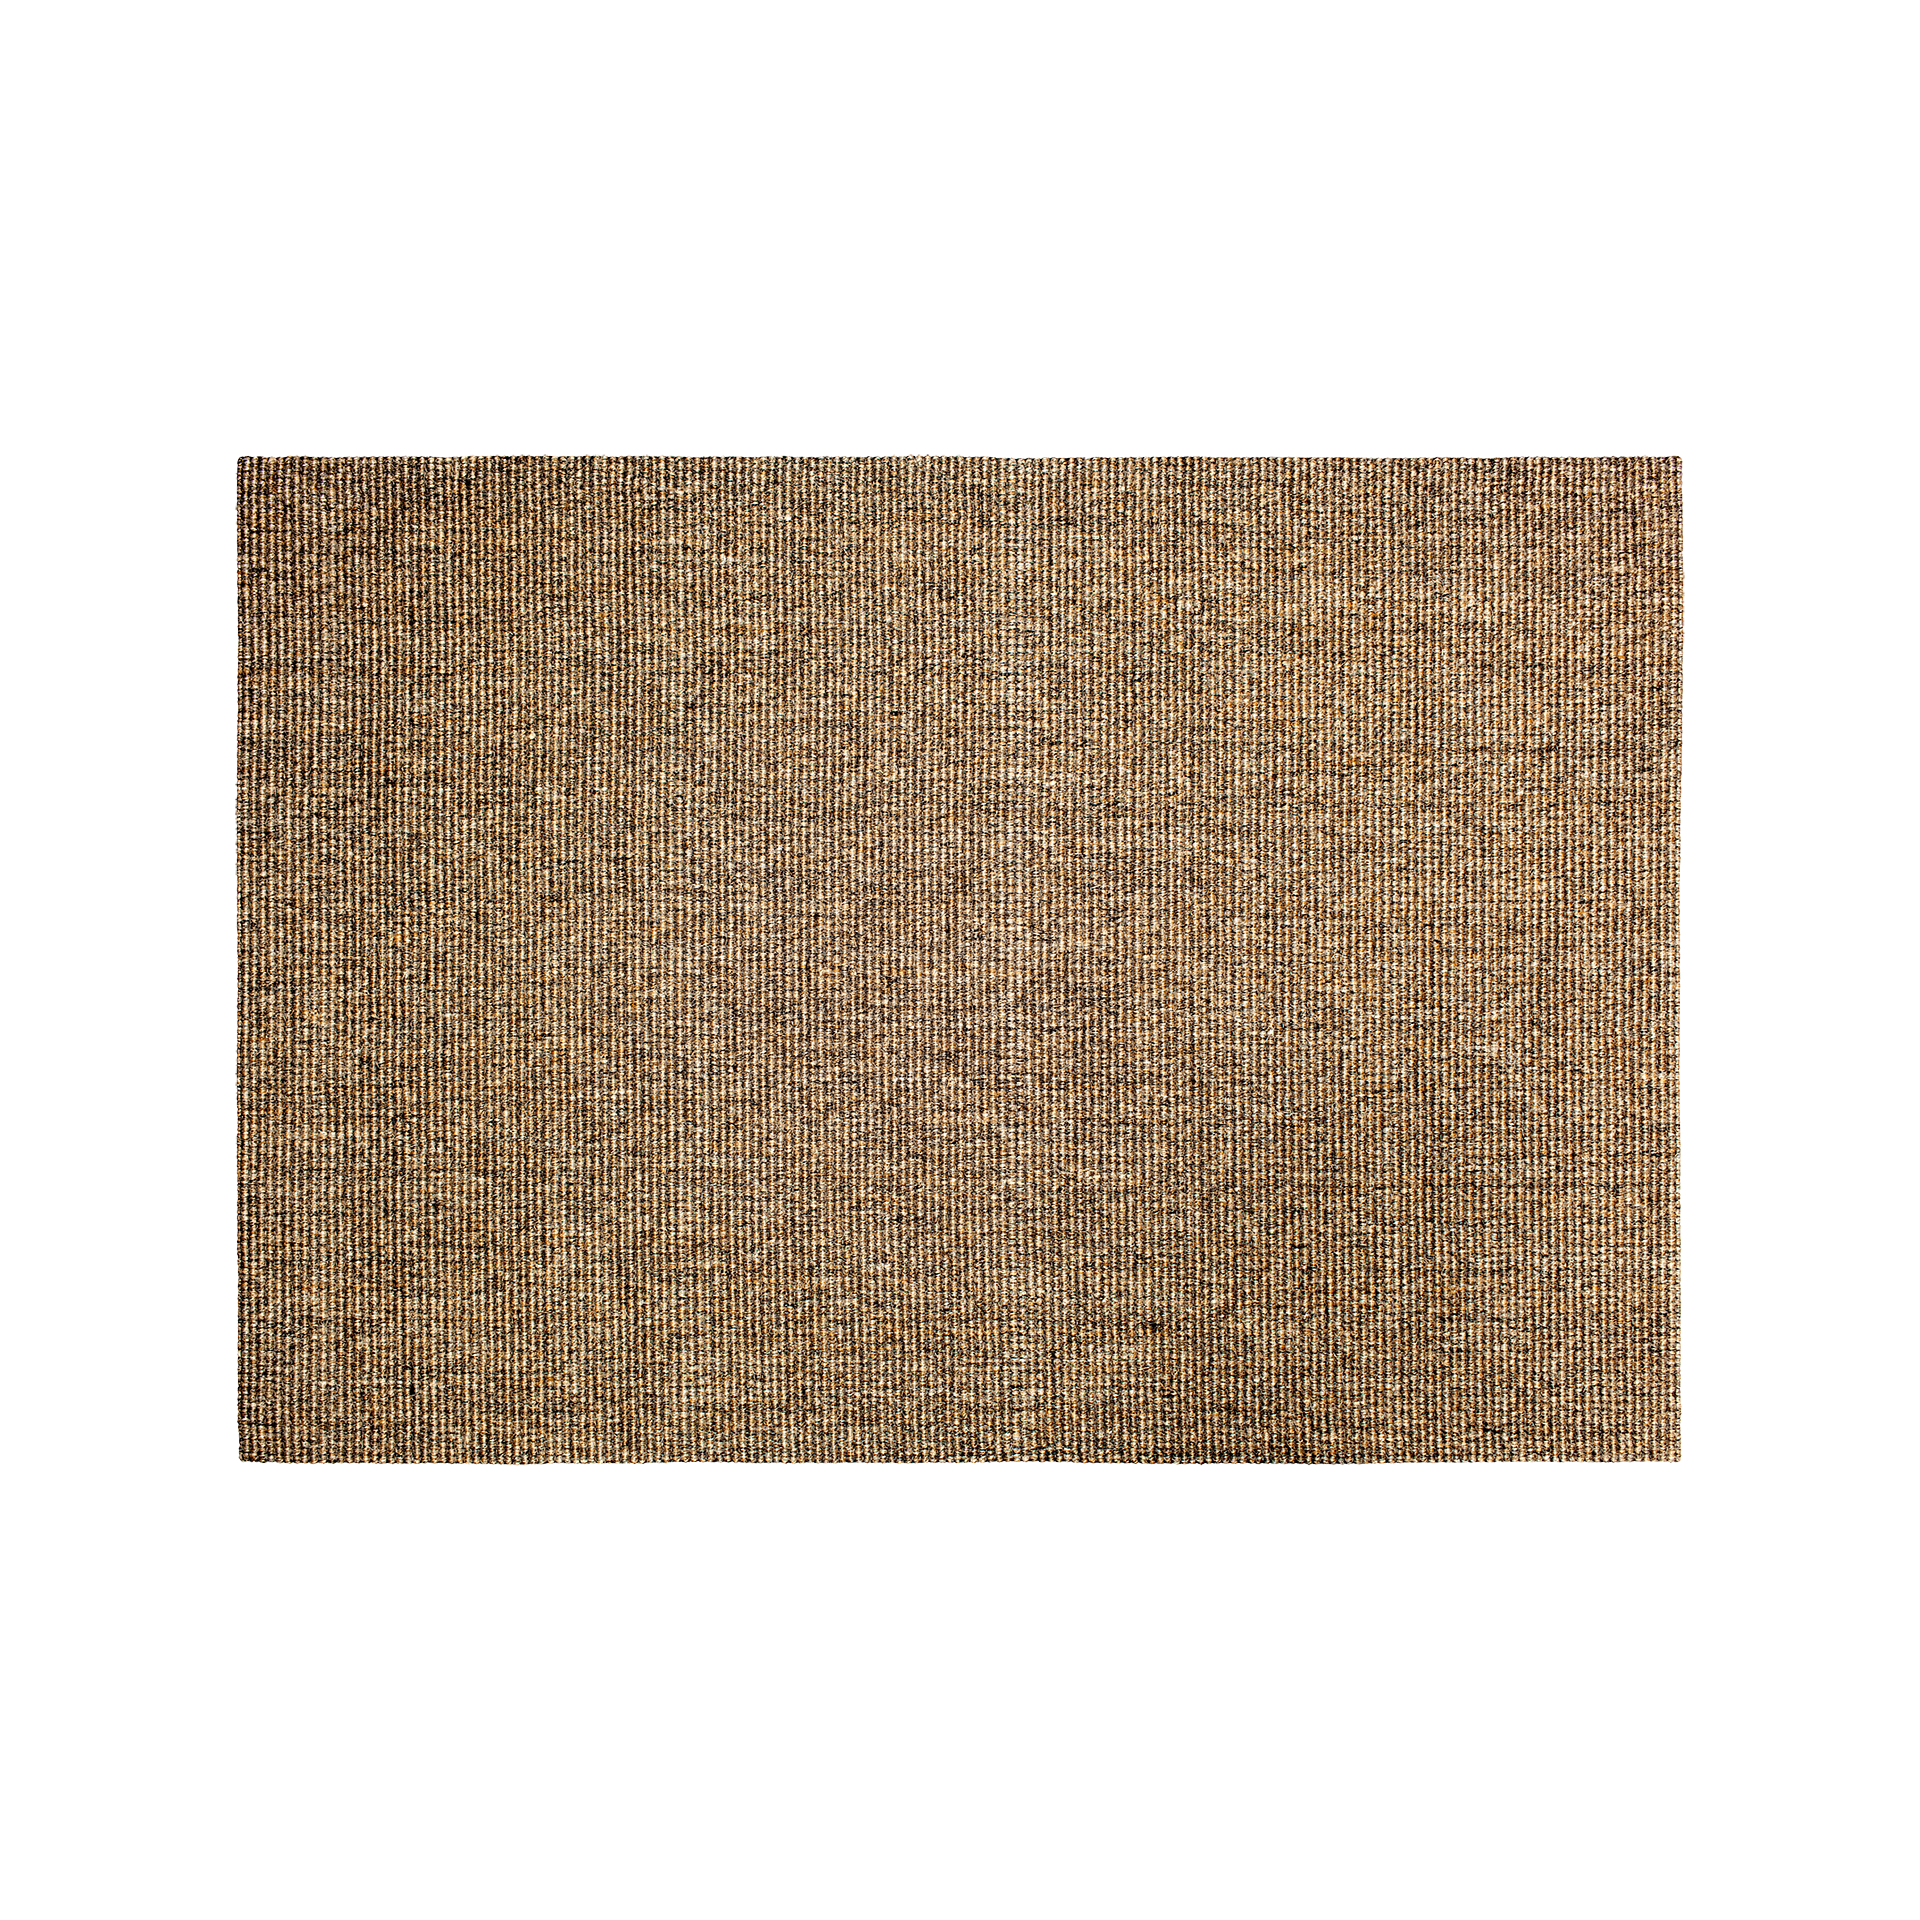 Natural melange large rug  Astrid, made of sisal